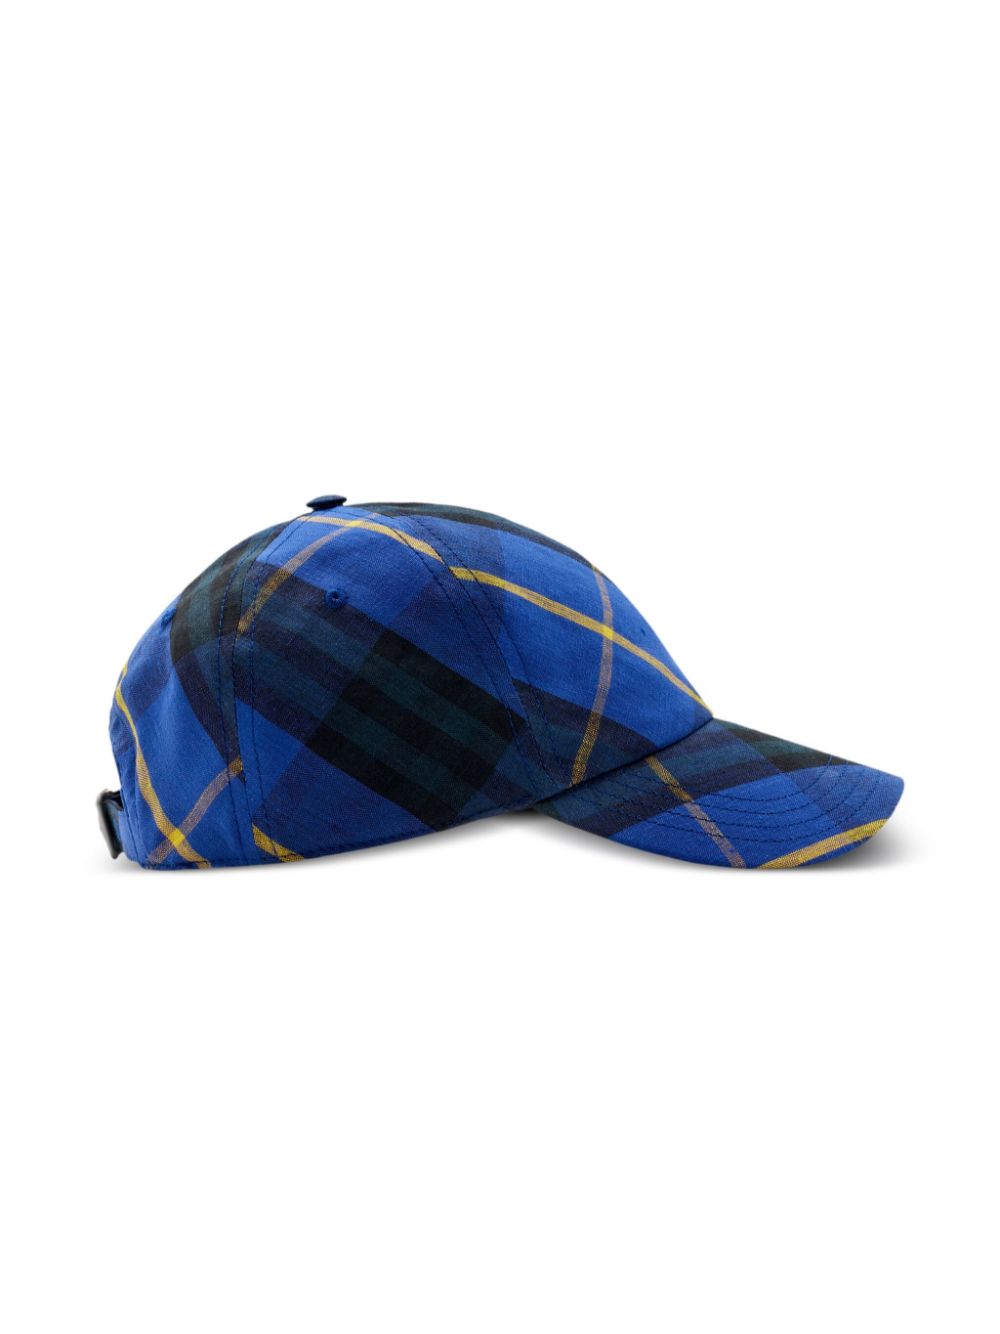 Burberry check linen baseball cap - Blauw